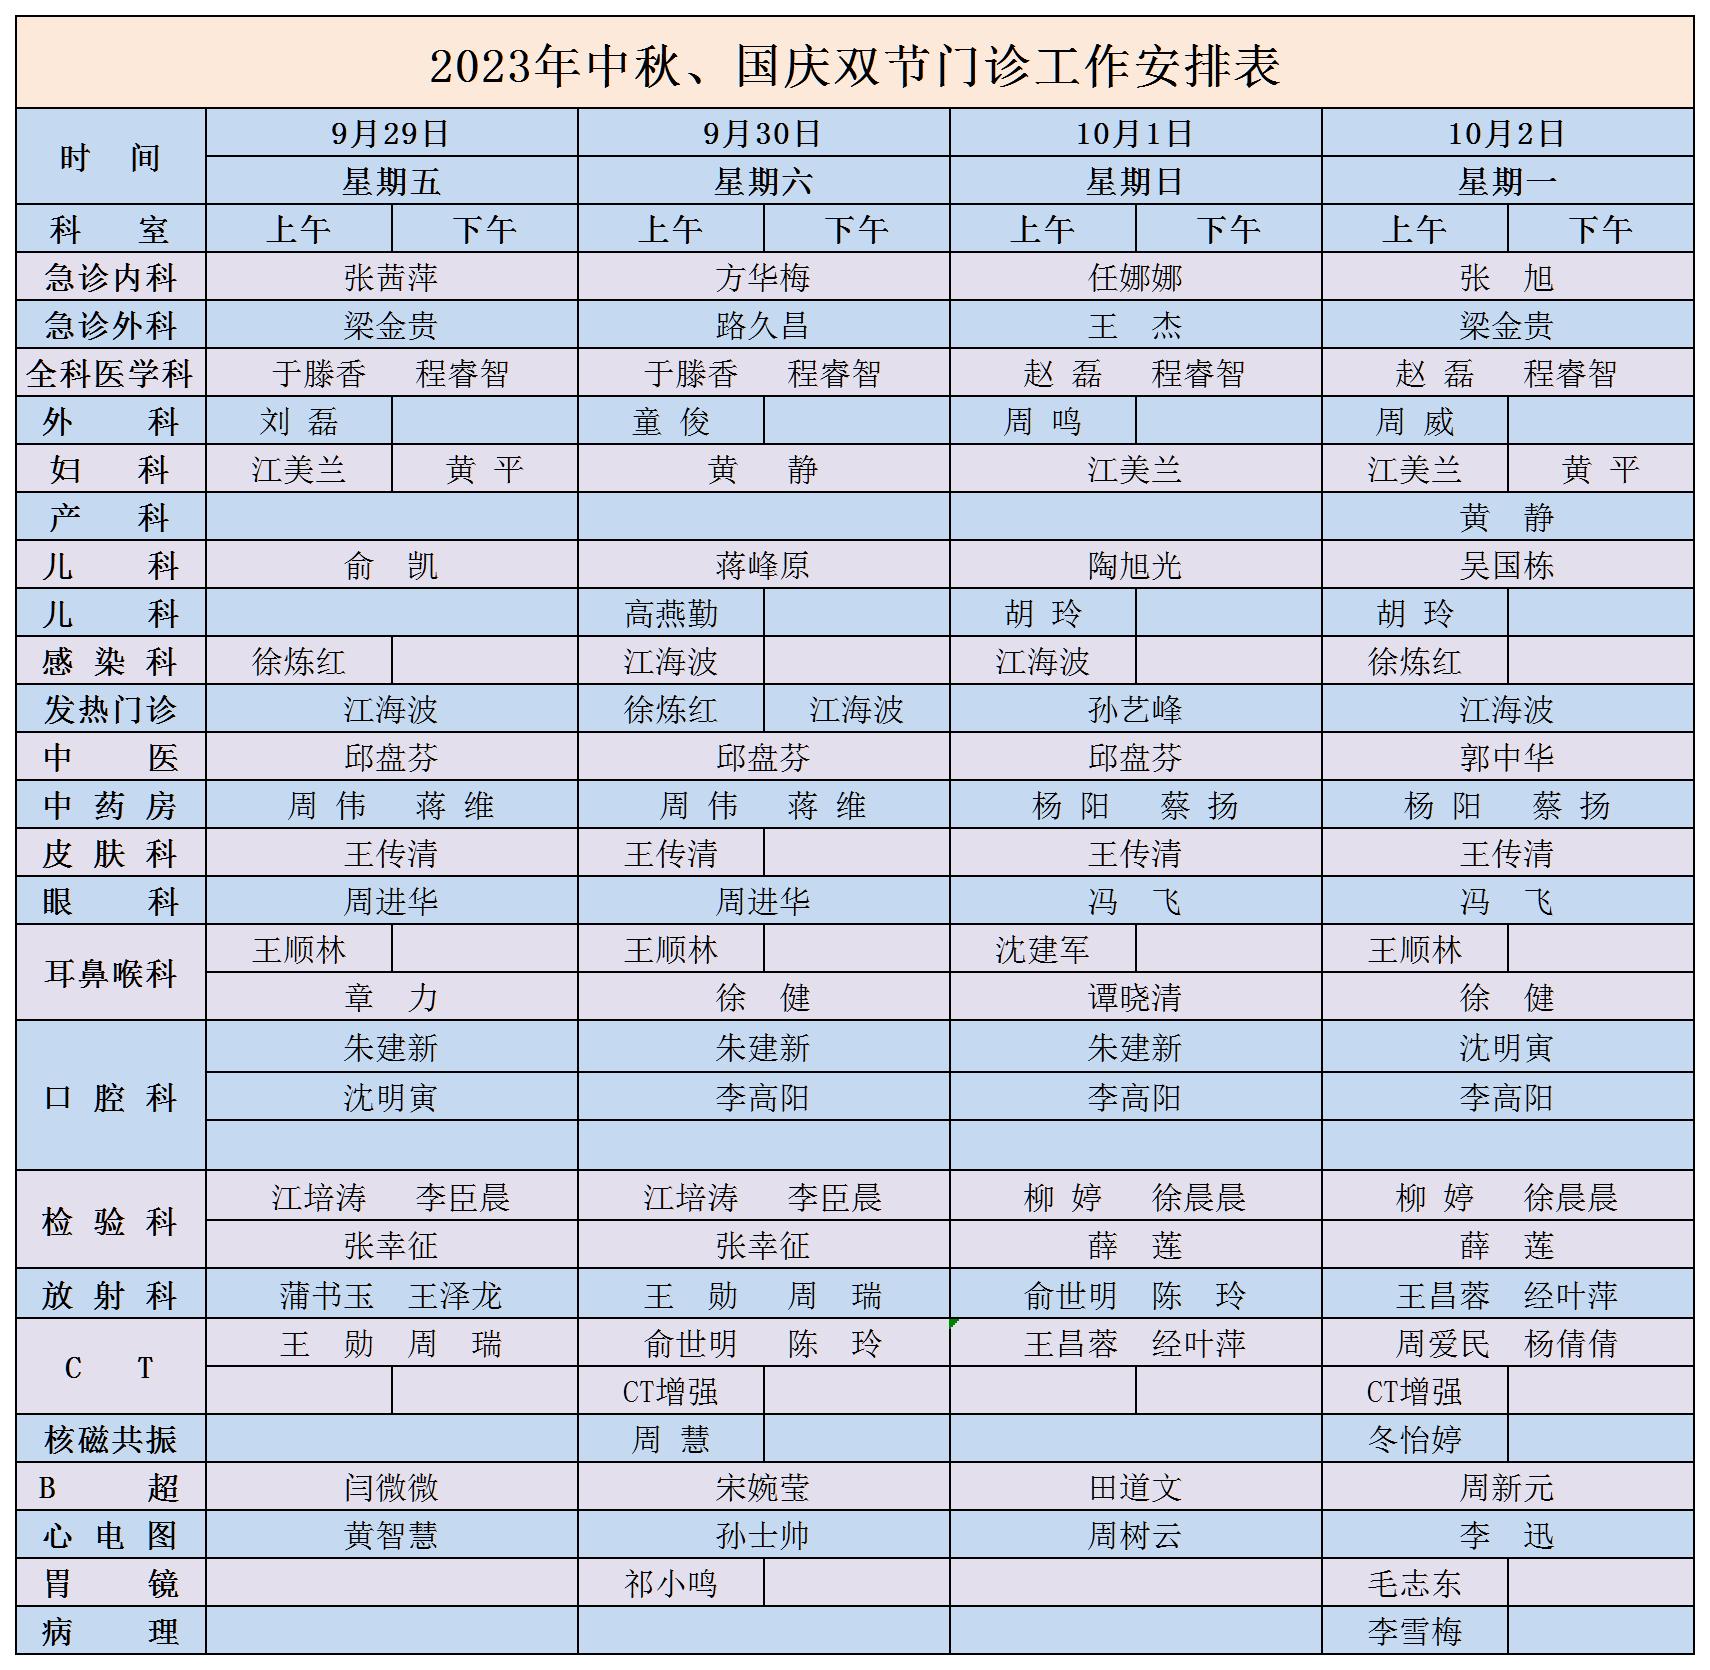 2023年中秋、國慶雙節門診工作安排表_Sheet1.jpg